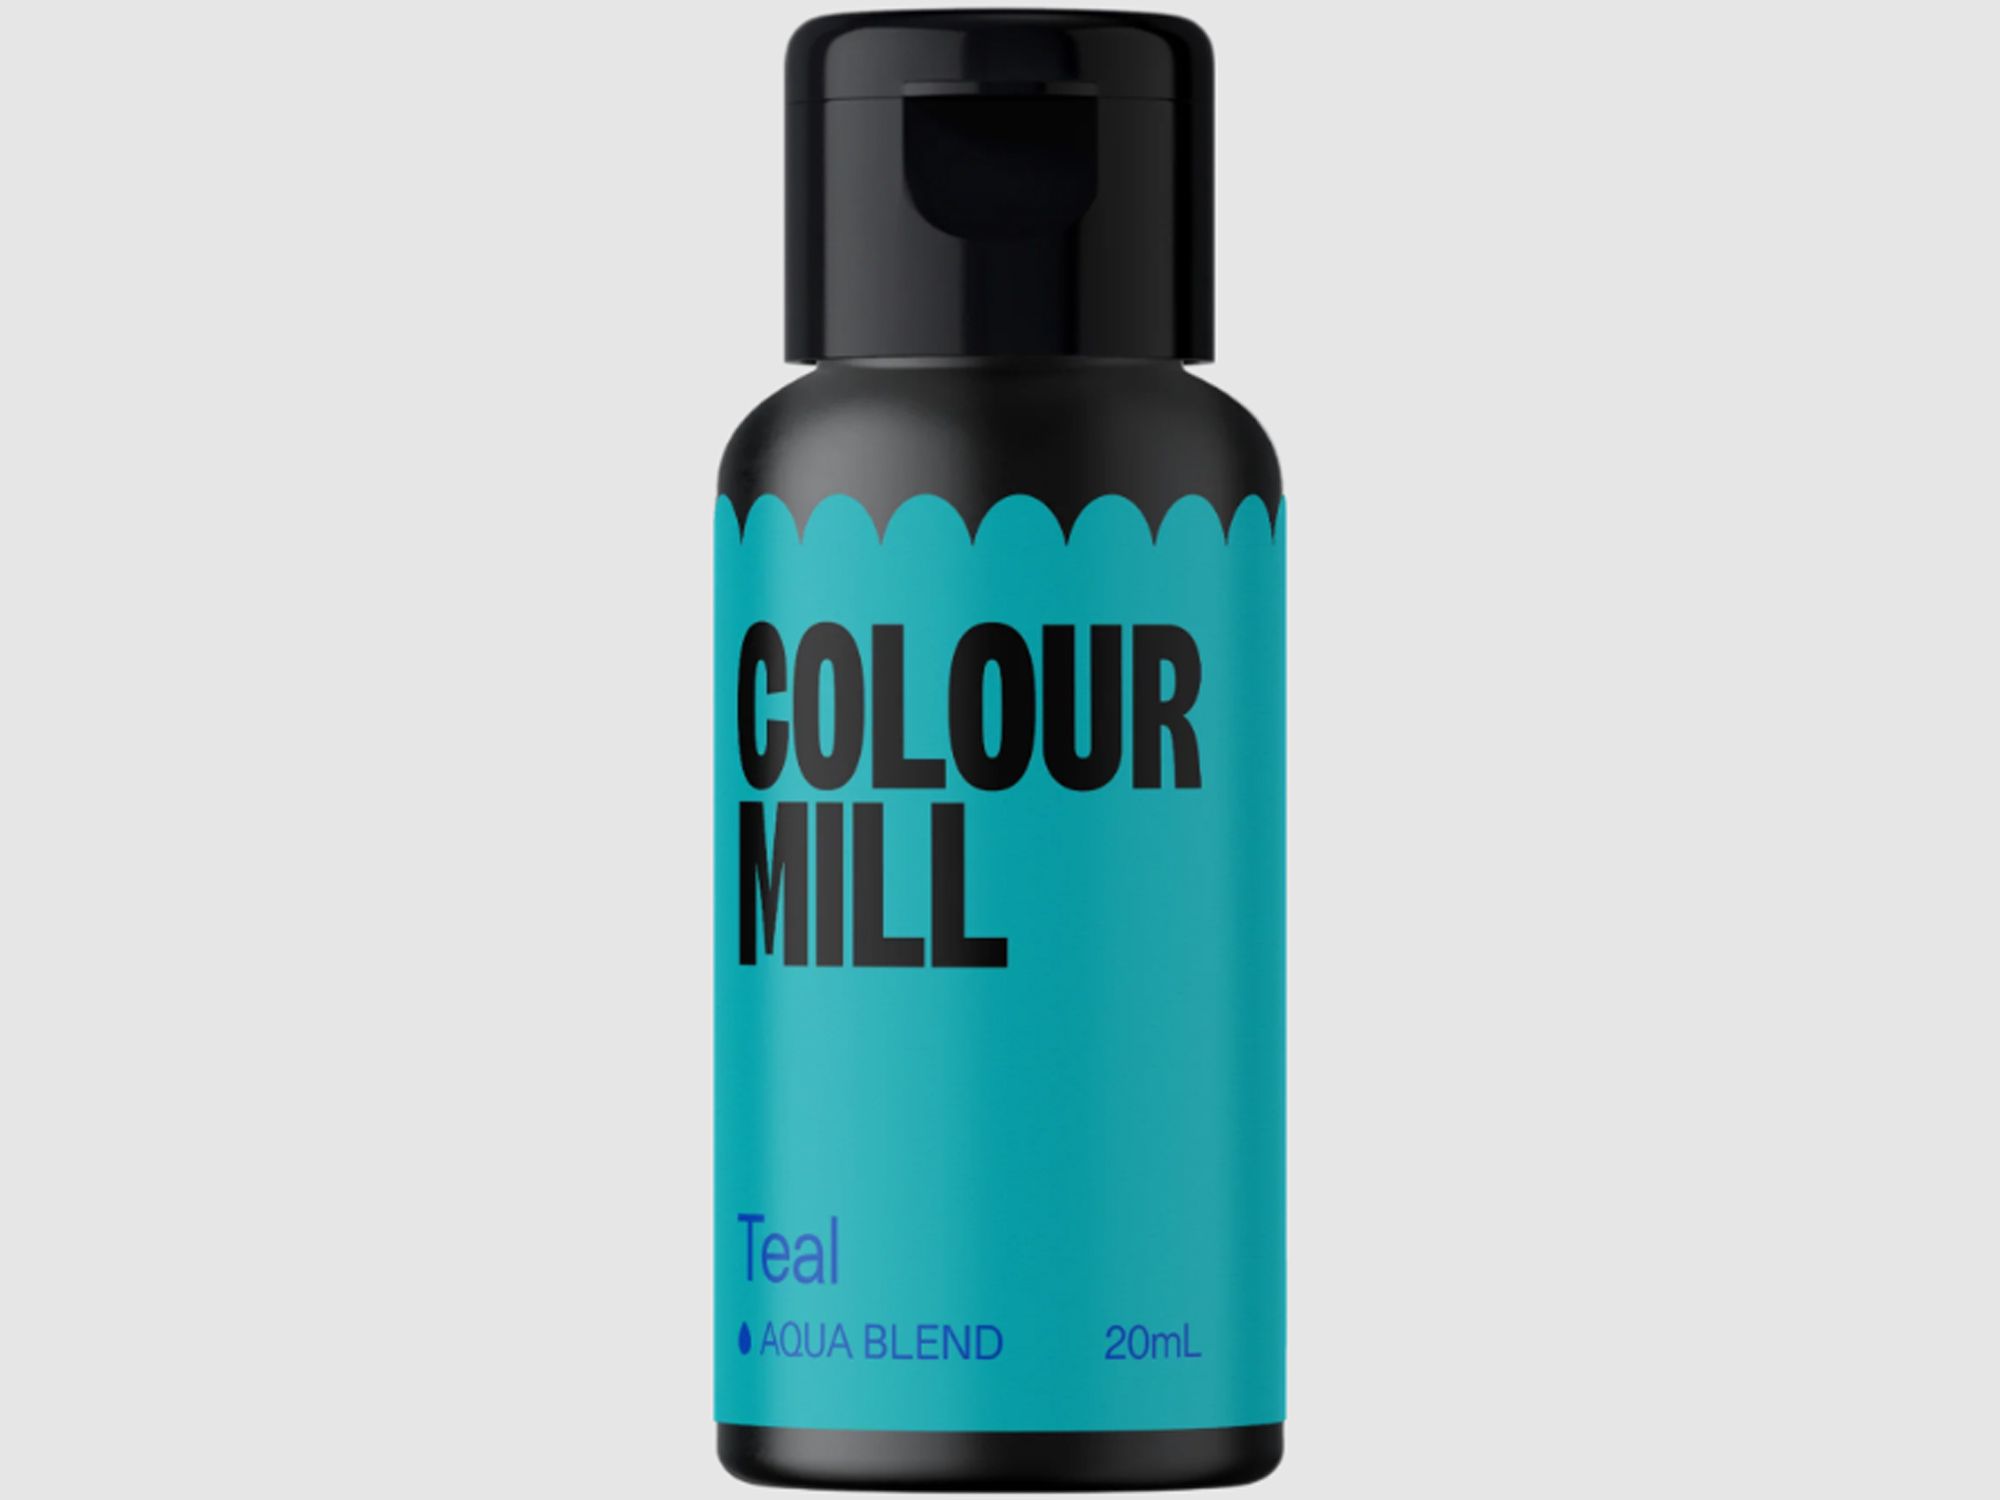 Colour Mill Teal (Aqua Blend) 20ml